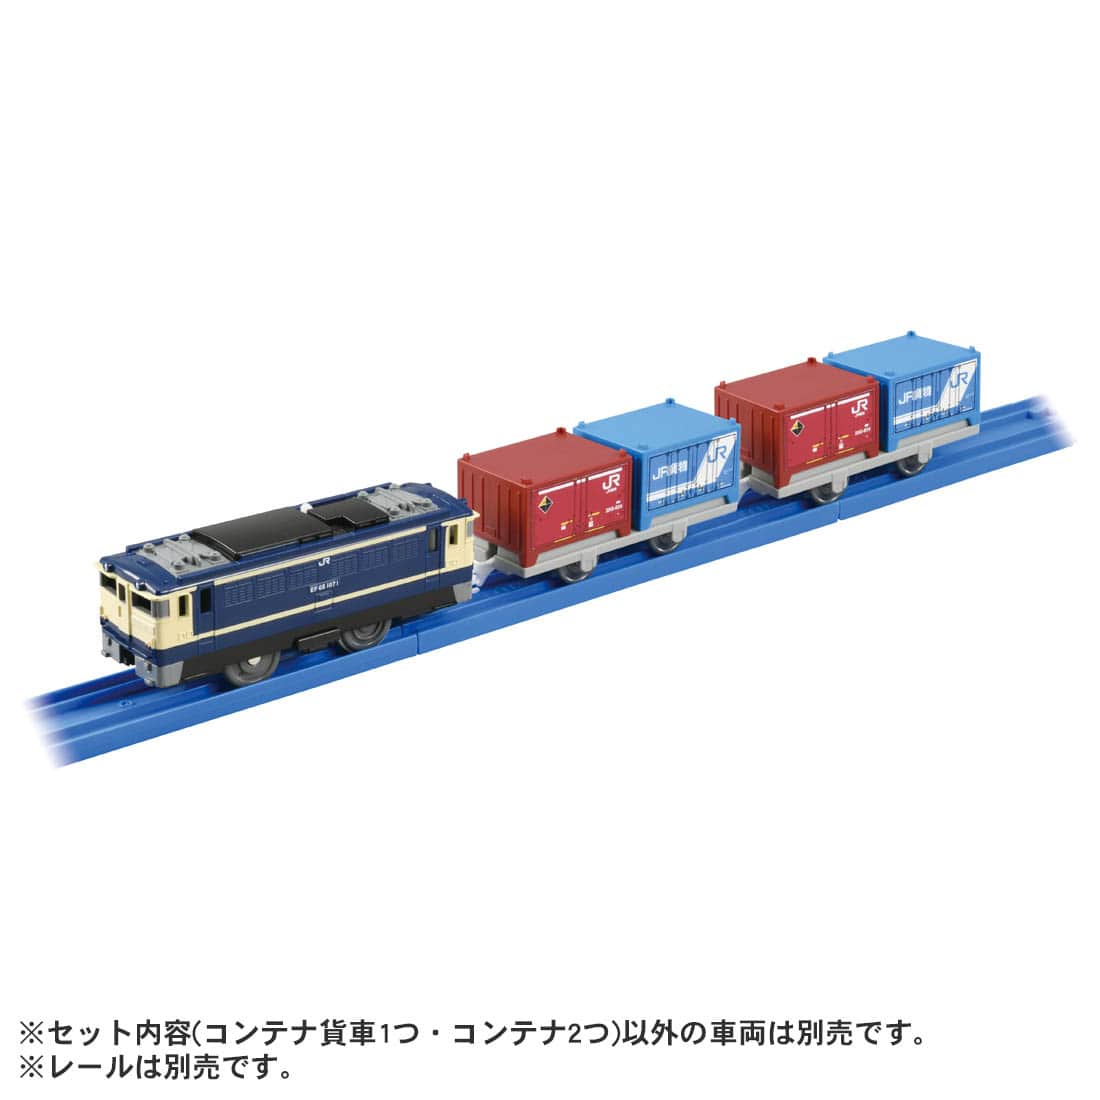 タカラトミー 164395 KF-05 JR貨物コンテナ | 鉄道模型ホビーショップ